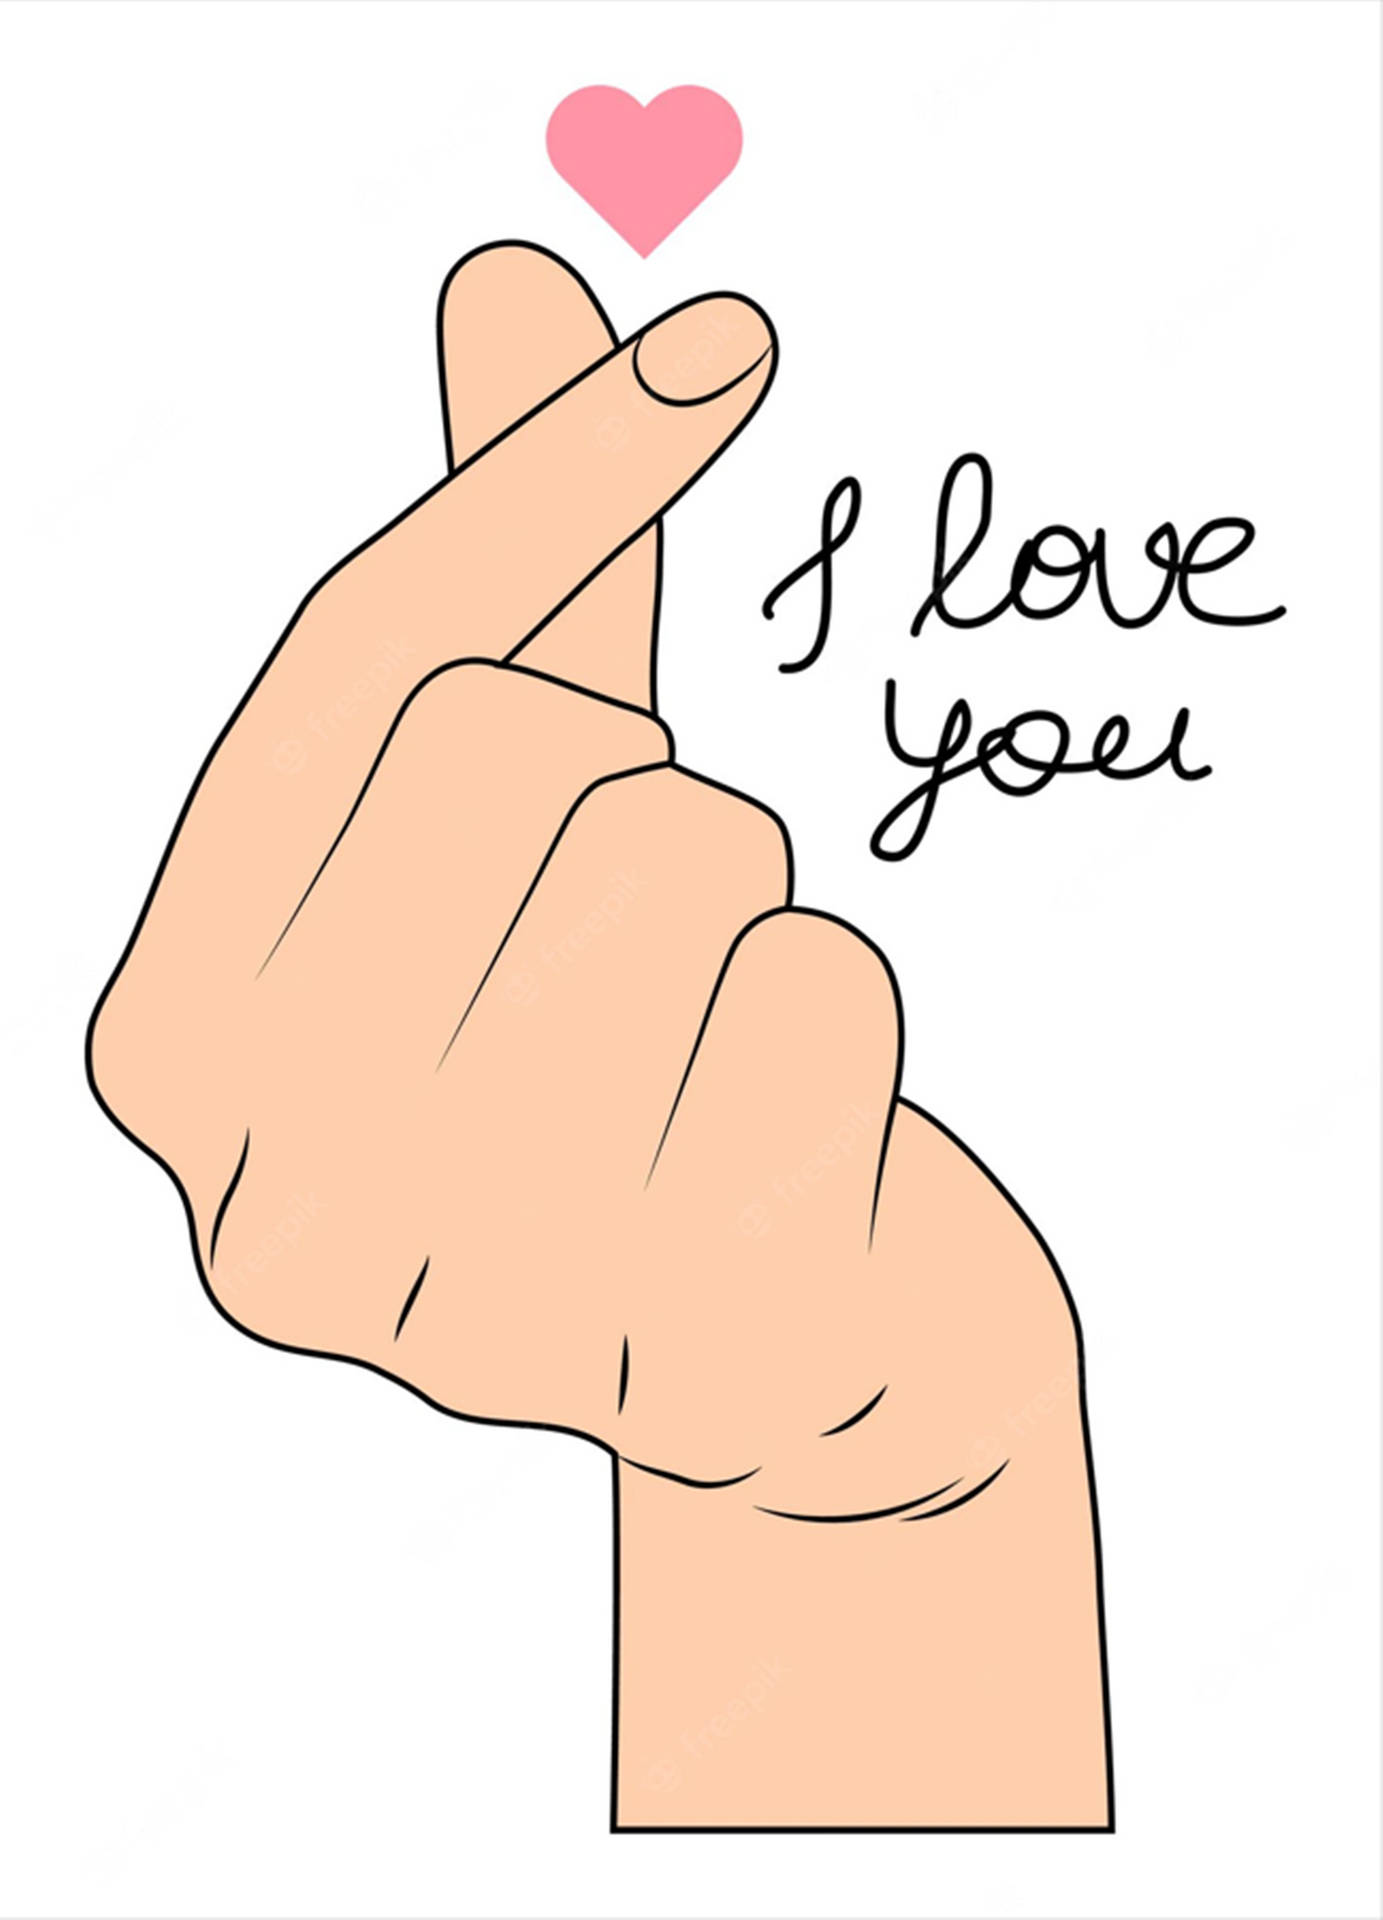 Digital Illustration Korean Finger Heart